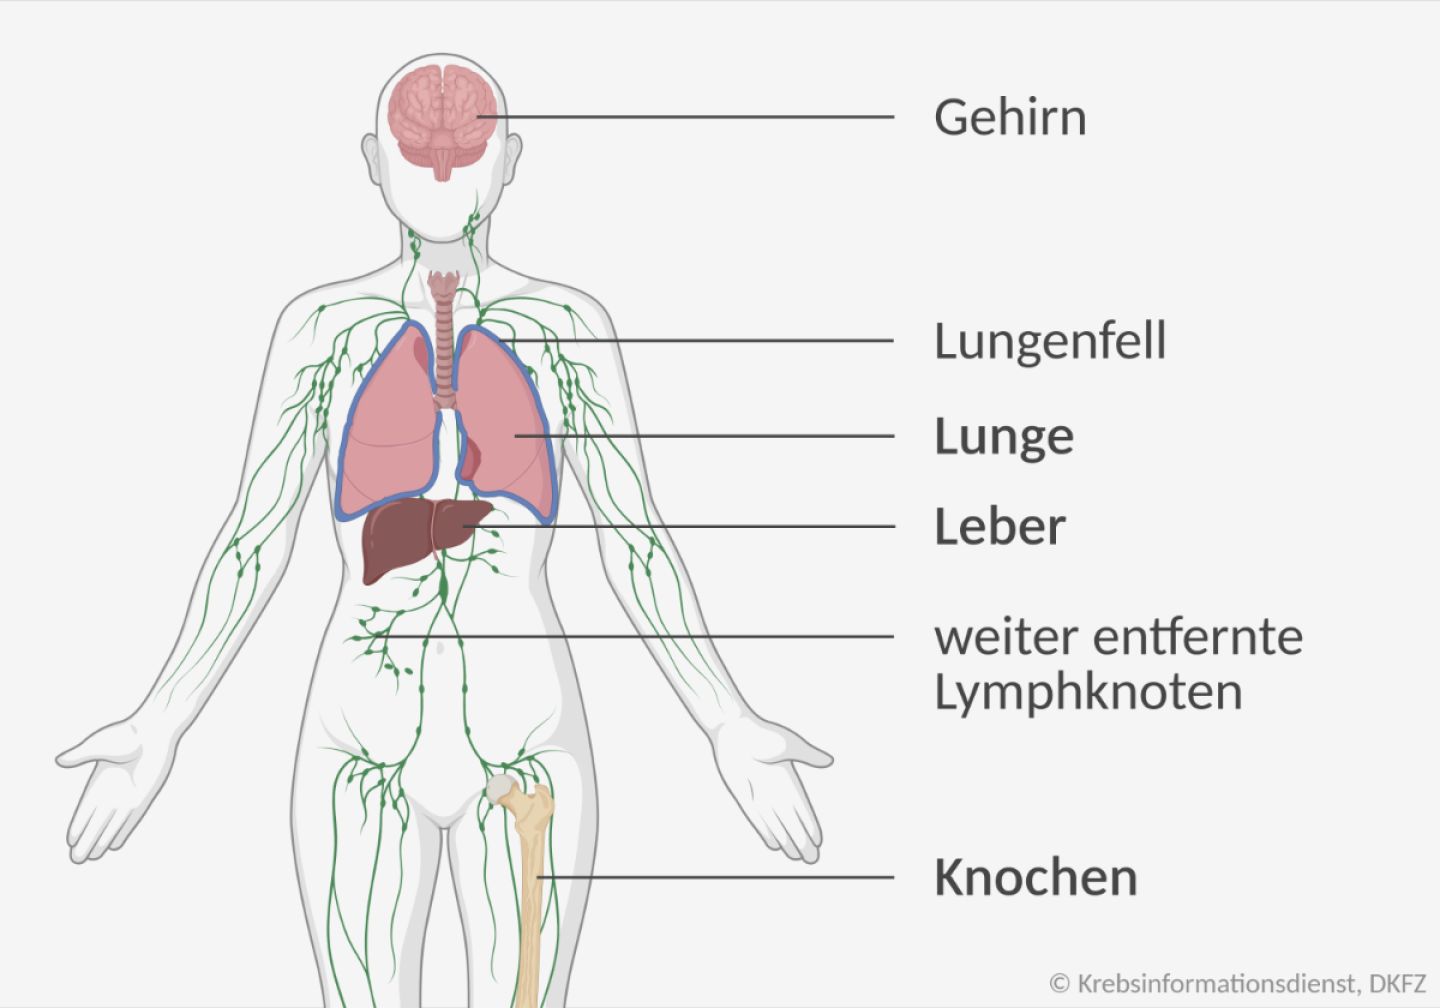 Grafische Darstellung der Gewebe, in die Brustkrebs am häufigsten streut: Knochen, Lunge, Leber, weiter entfernte Lymphknoten, Gehirn und Lungenfell.